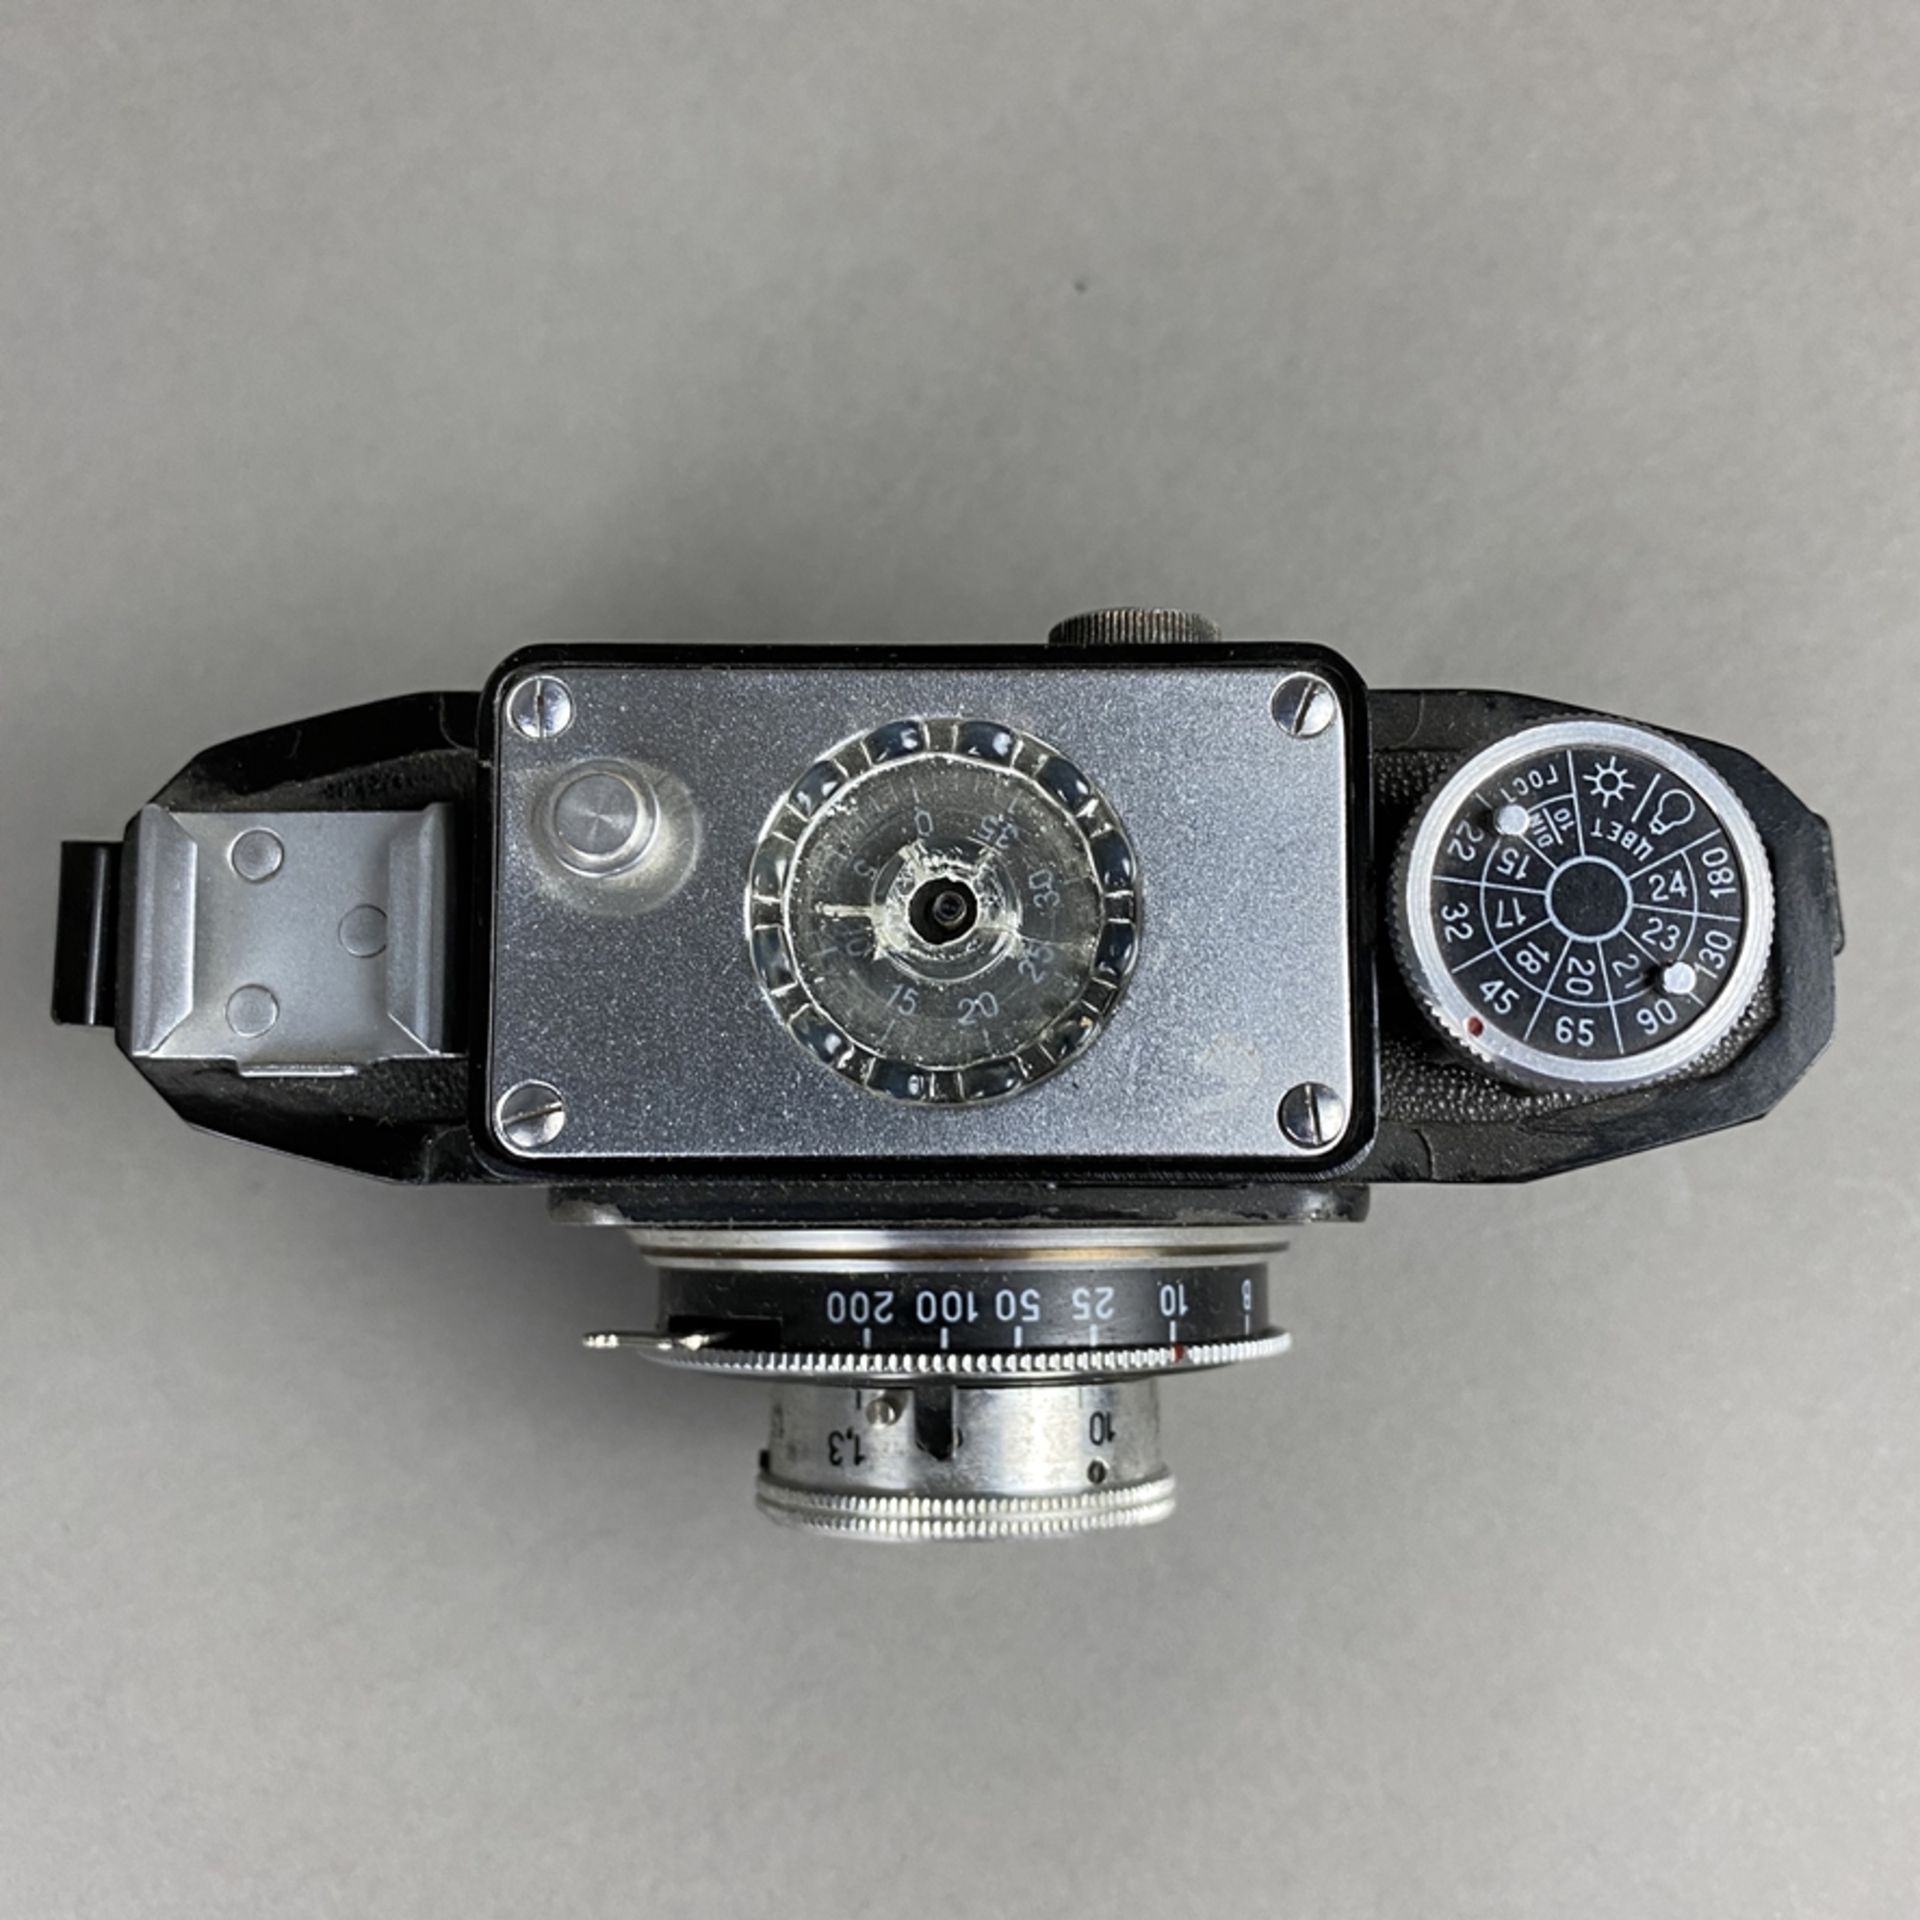 Sowjetische Vitage-Kamera Smena - 1952-60, UdSSR, Bakelitgehäuse Nr.528242, gebrauchter Zustand, - Bild 3 aus 5